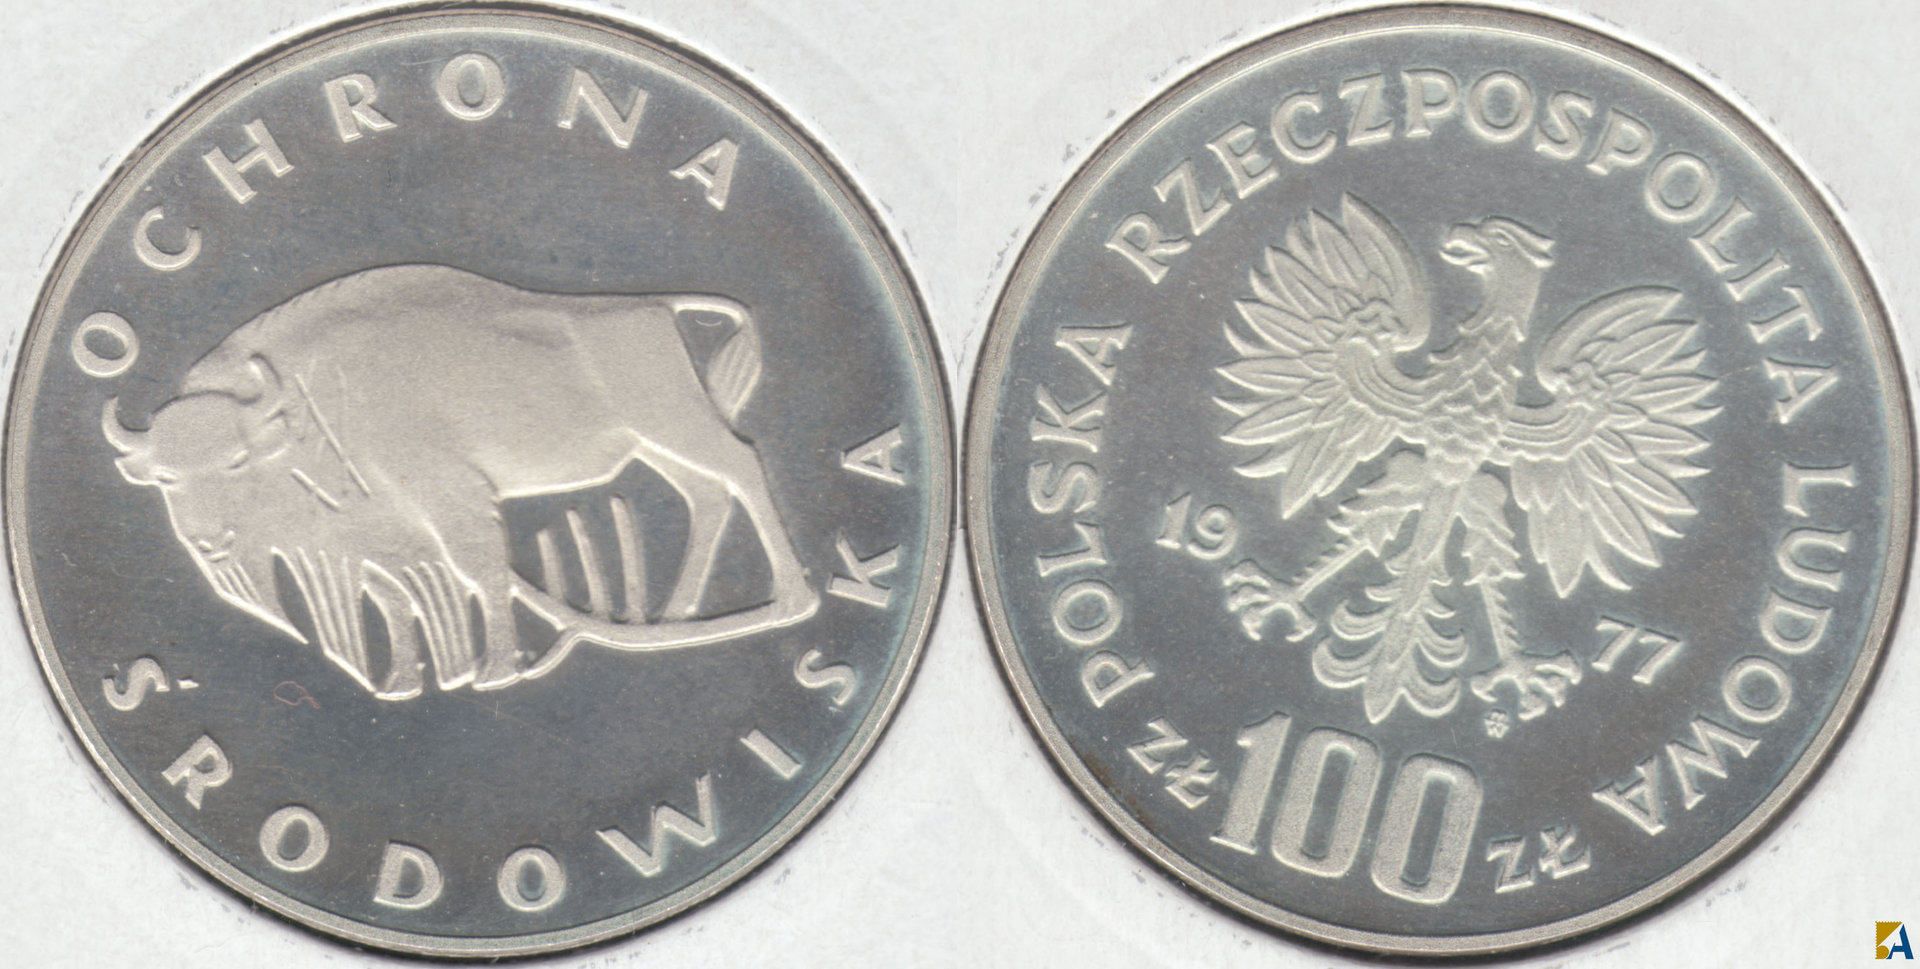 POLONIA - POLSKA. 100 ZLOTYCH DE 1977. PLATA 0.625. (5)